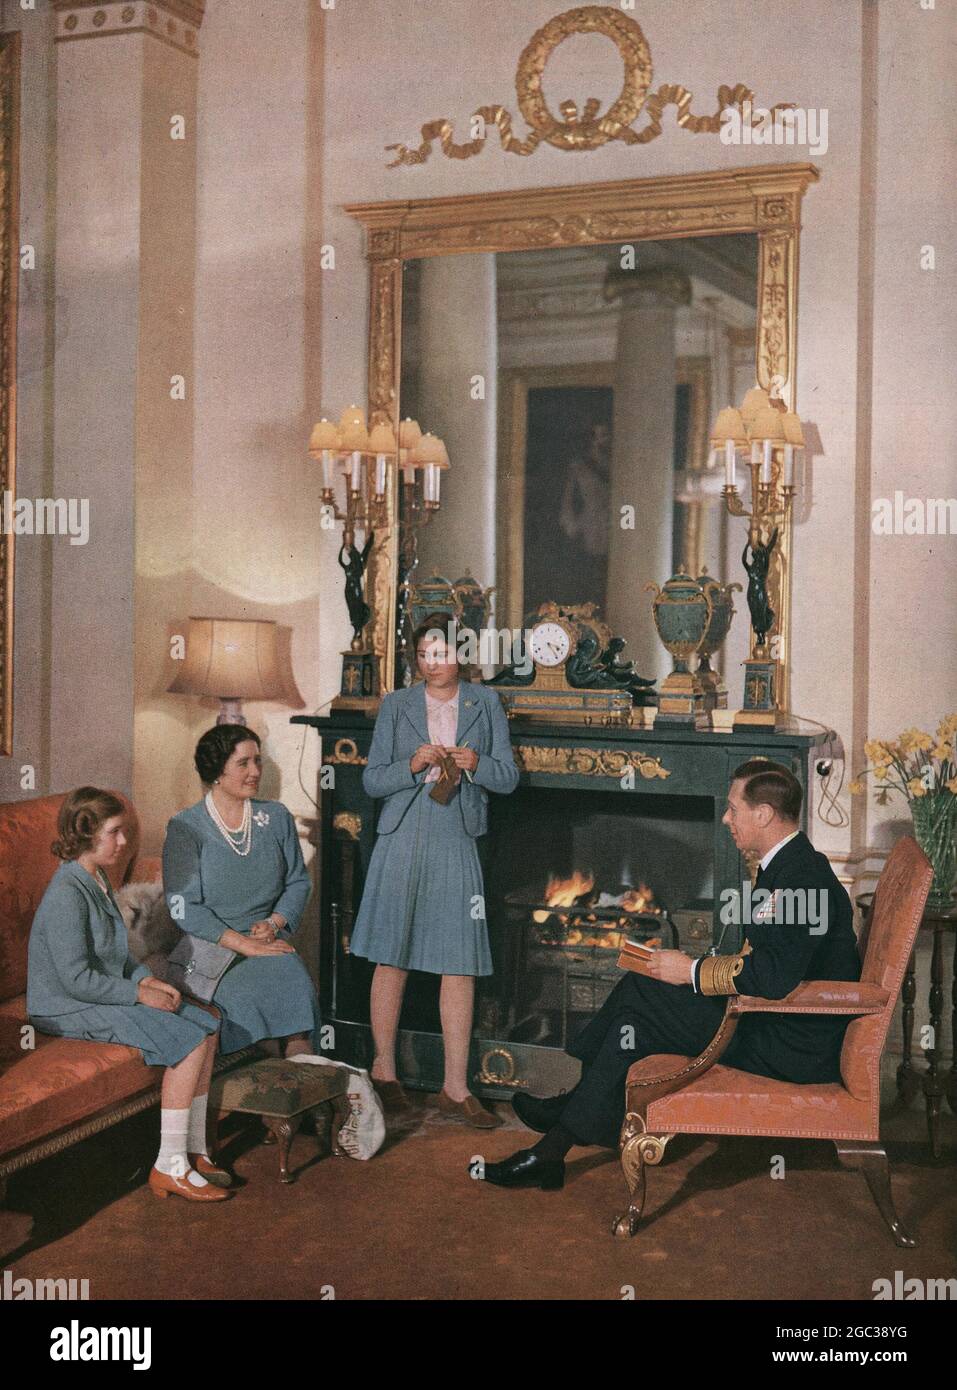 Die königliche Familie zu Hause unterhalten sich König und Königin. Prinzessin Elizabeth strickt und die 11-jährige Prinzessin Margaret Rose hört sich das Gespräch an 1942. Mai ©2004 Topfoto Stockfoto